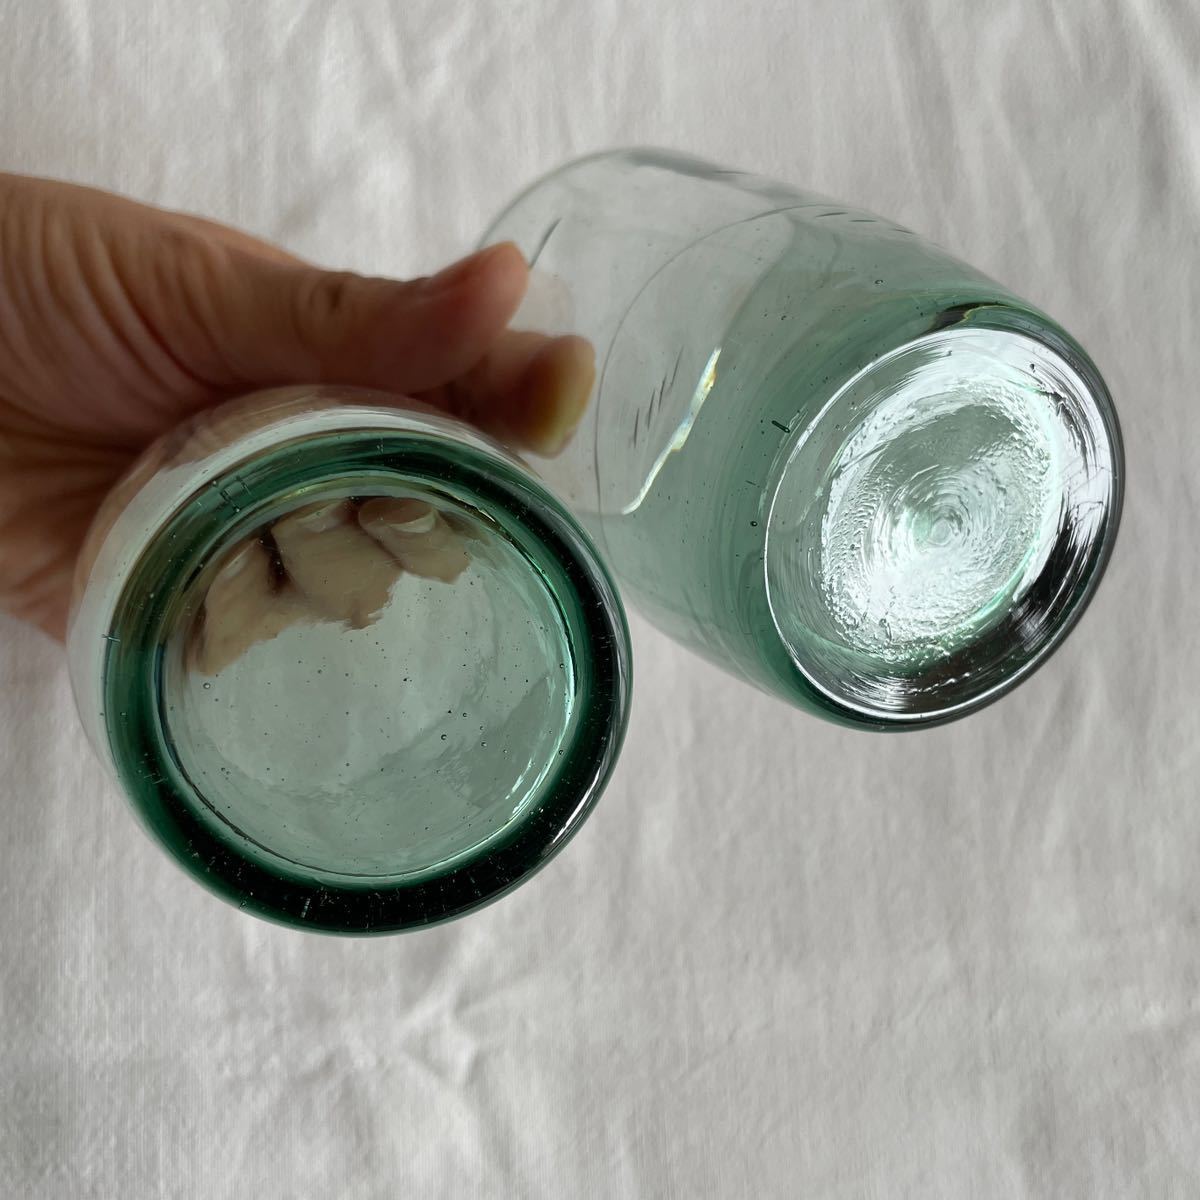 昭和戦前 ガラスコップ グラス 和ガラス 青緑 深緑 ヨット 船 海 エッチング 2点 Japanese vintage pressed glass cup_画像5